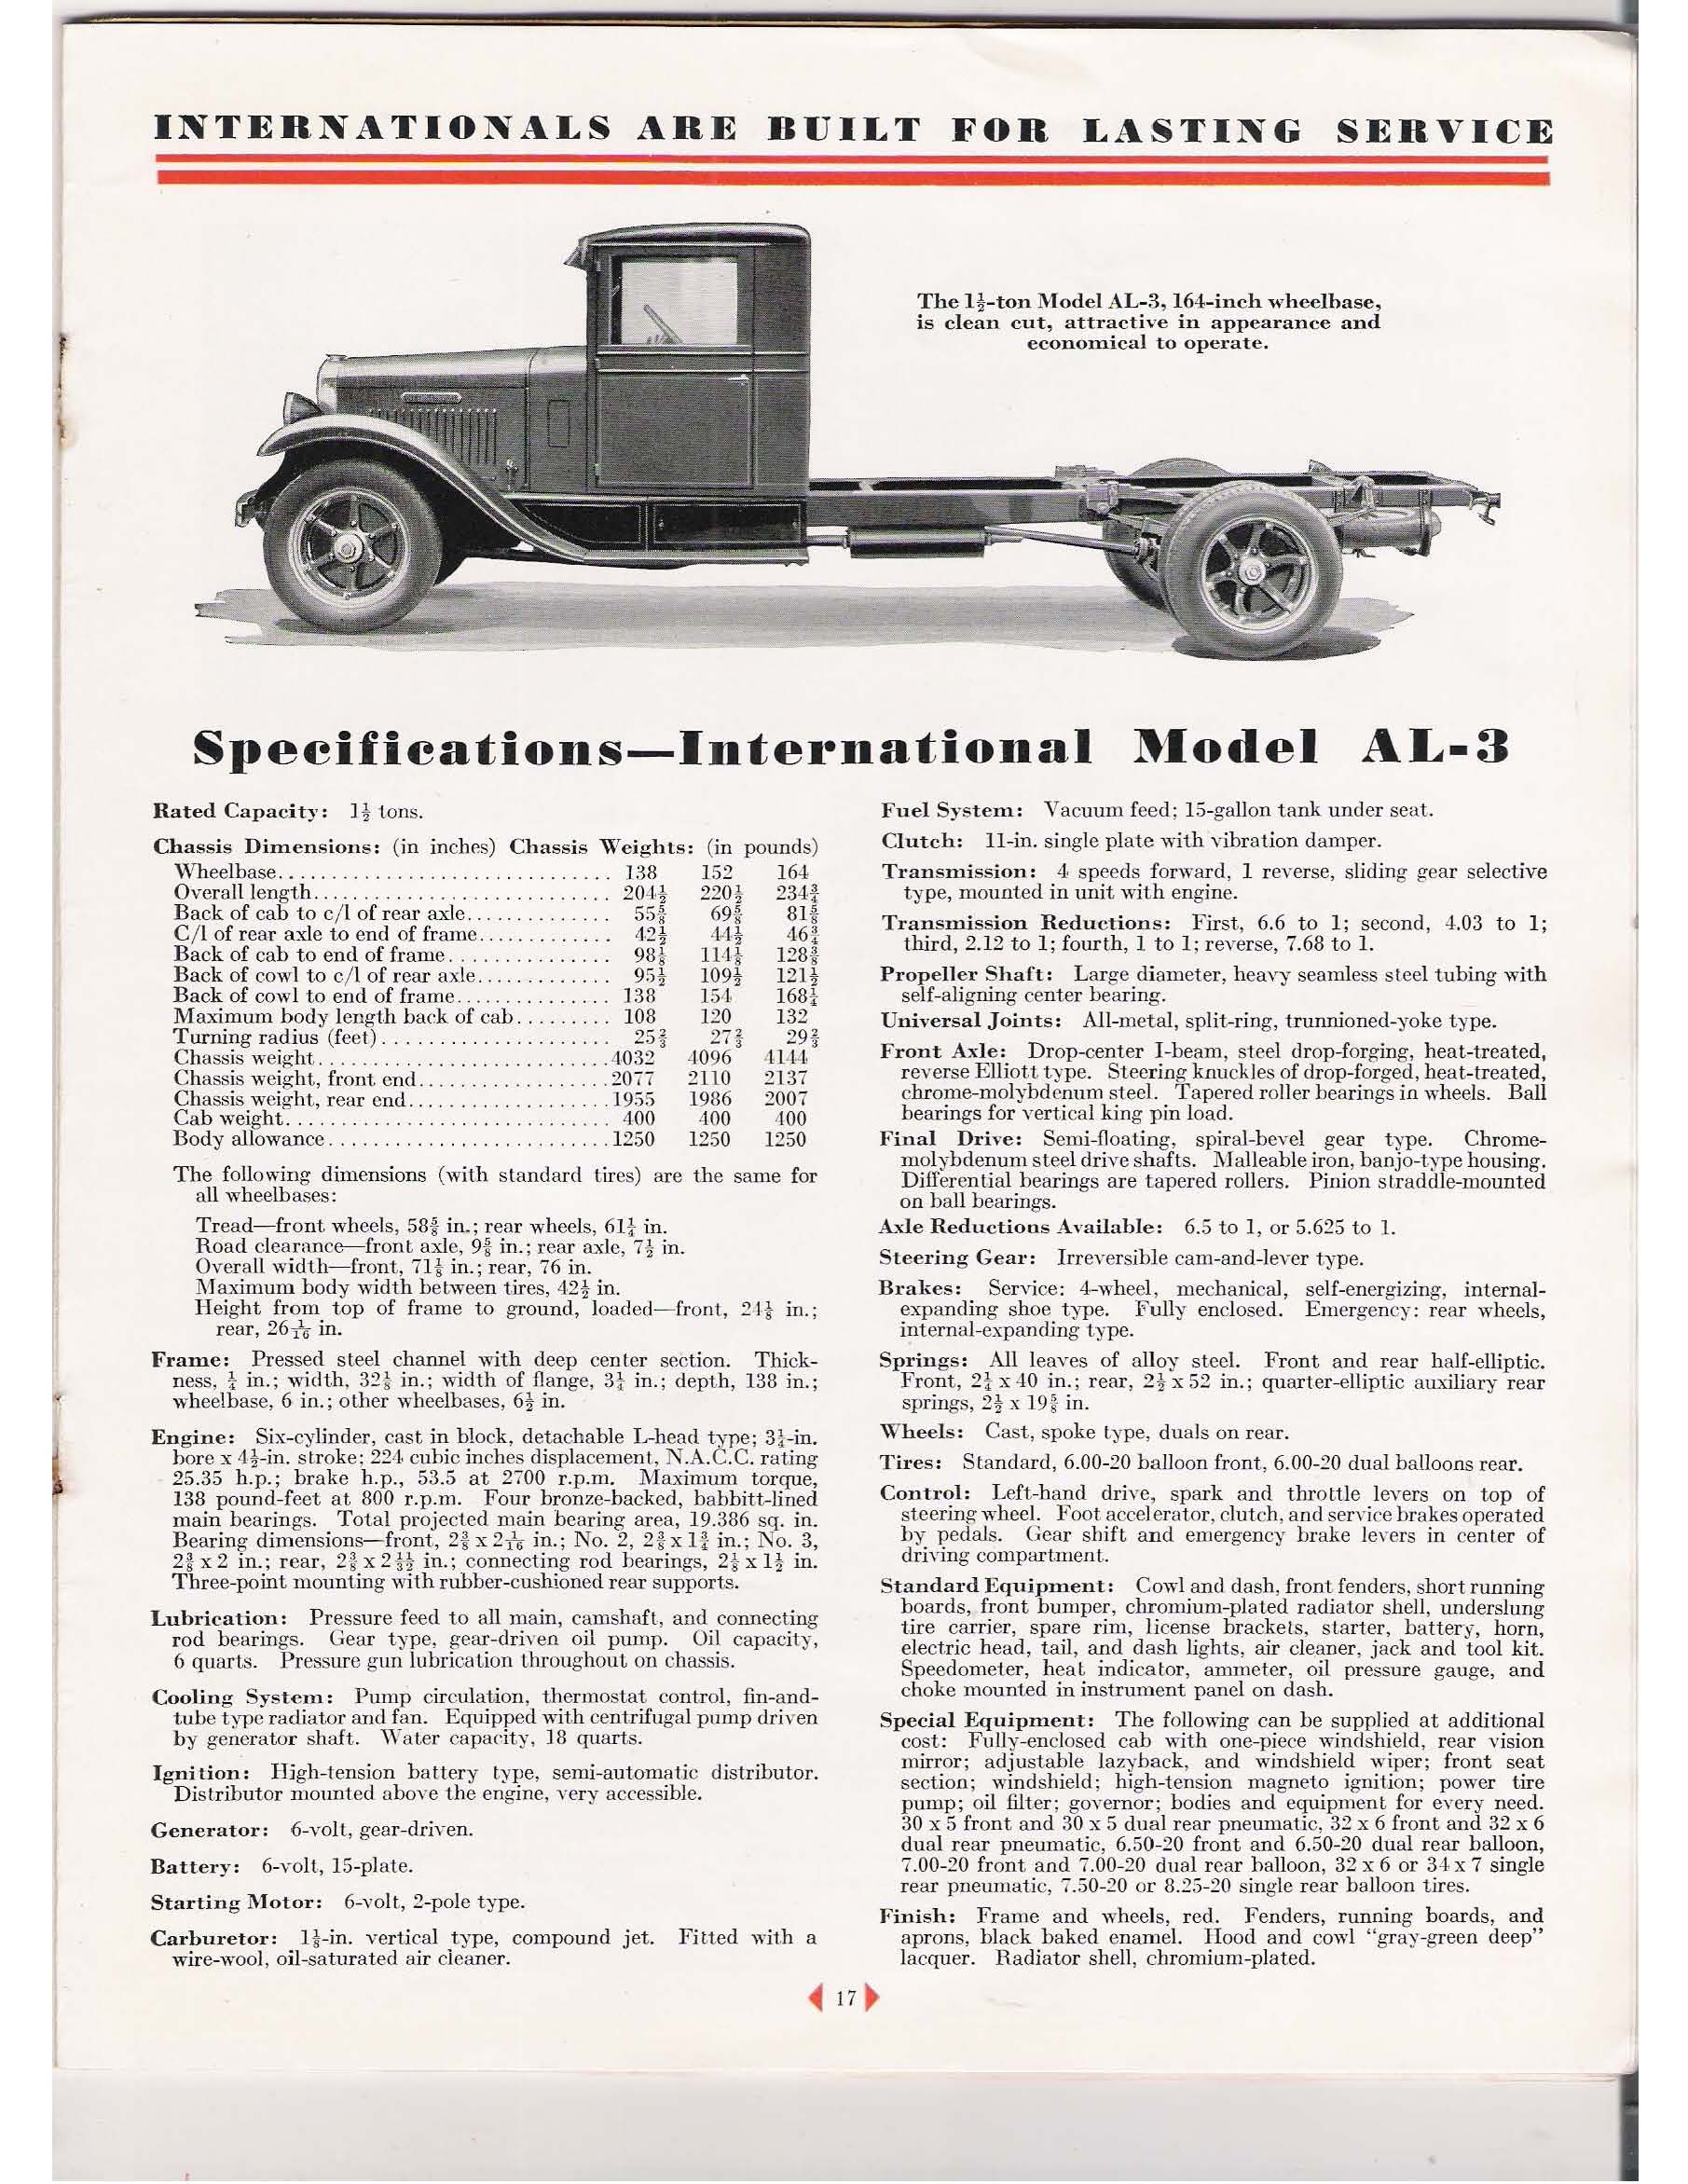 1931 International Spec Sheets-13